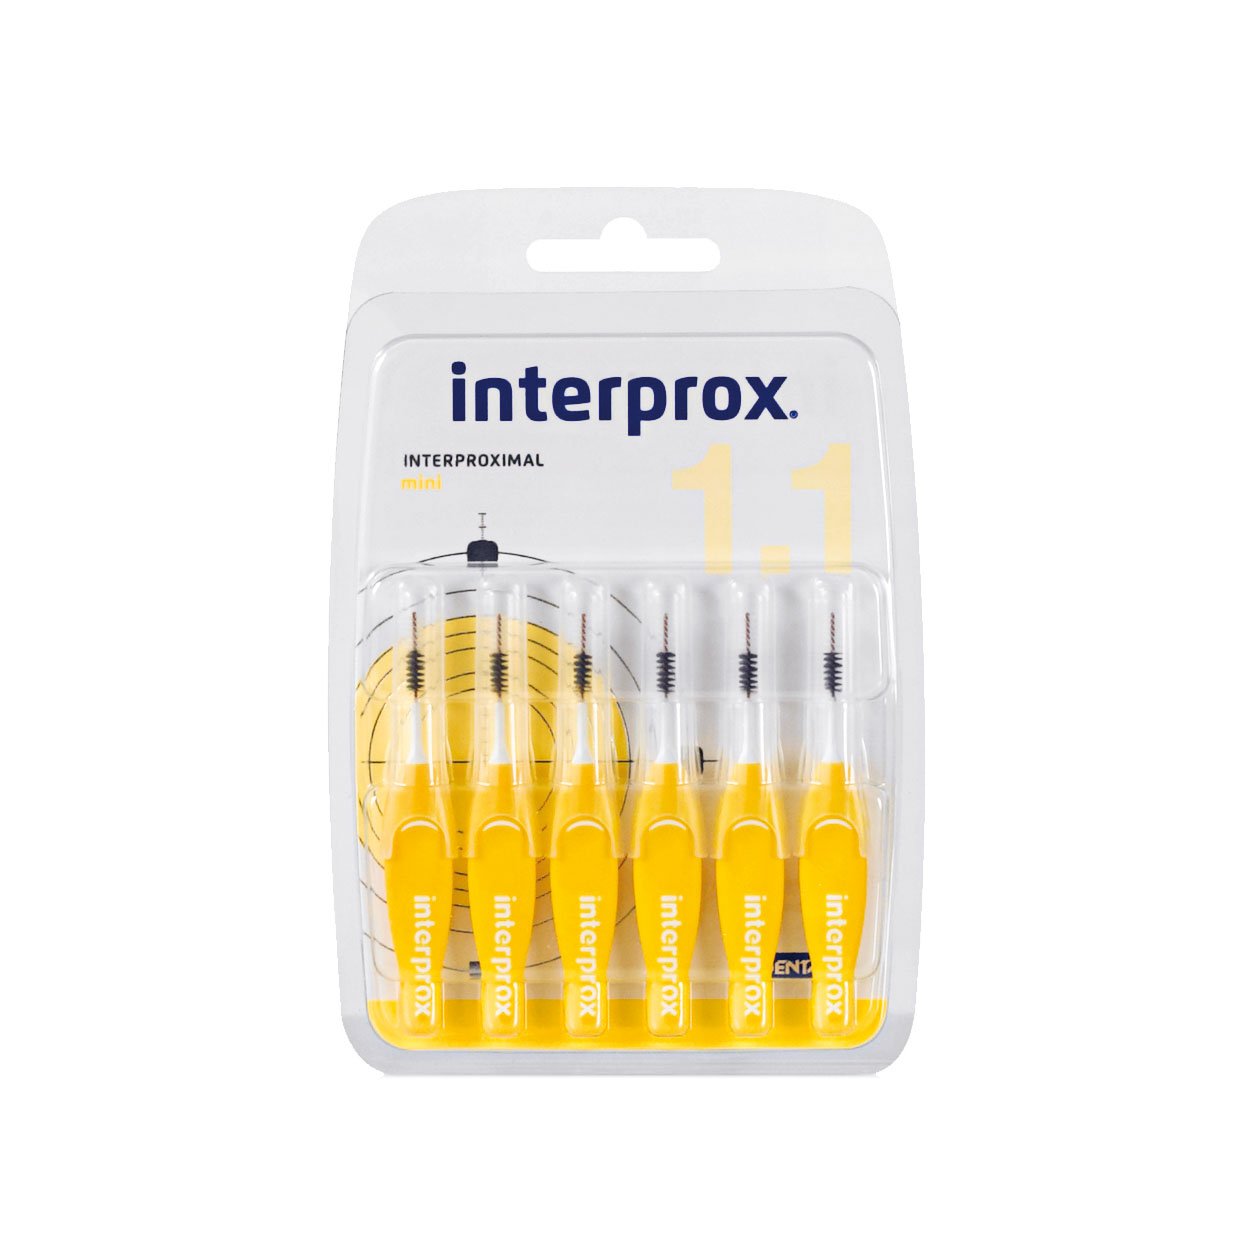 Interprox Interdentalbürsten gelb mini 6 Stück Packung, 6er Pack (6x 6 Stück)